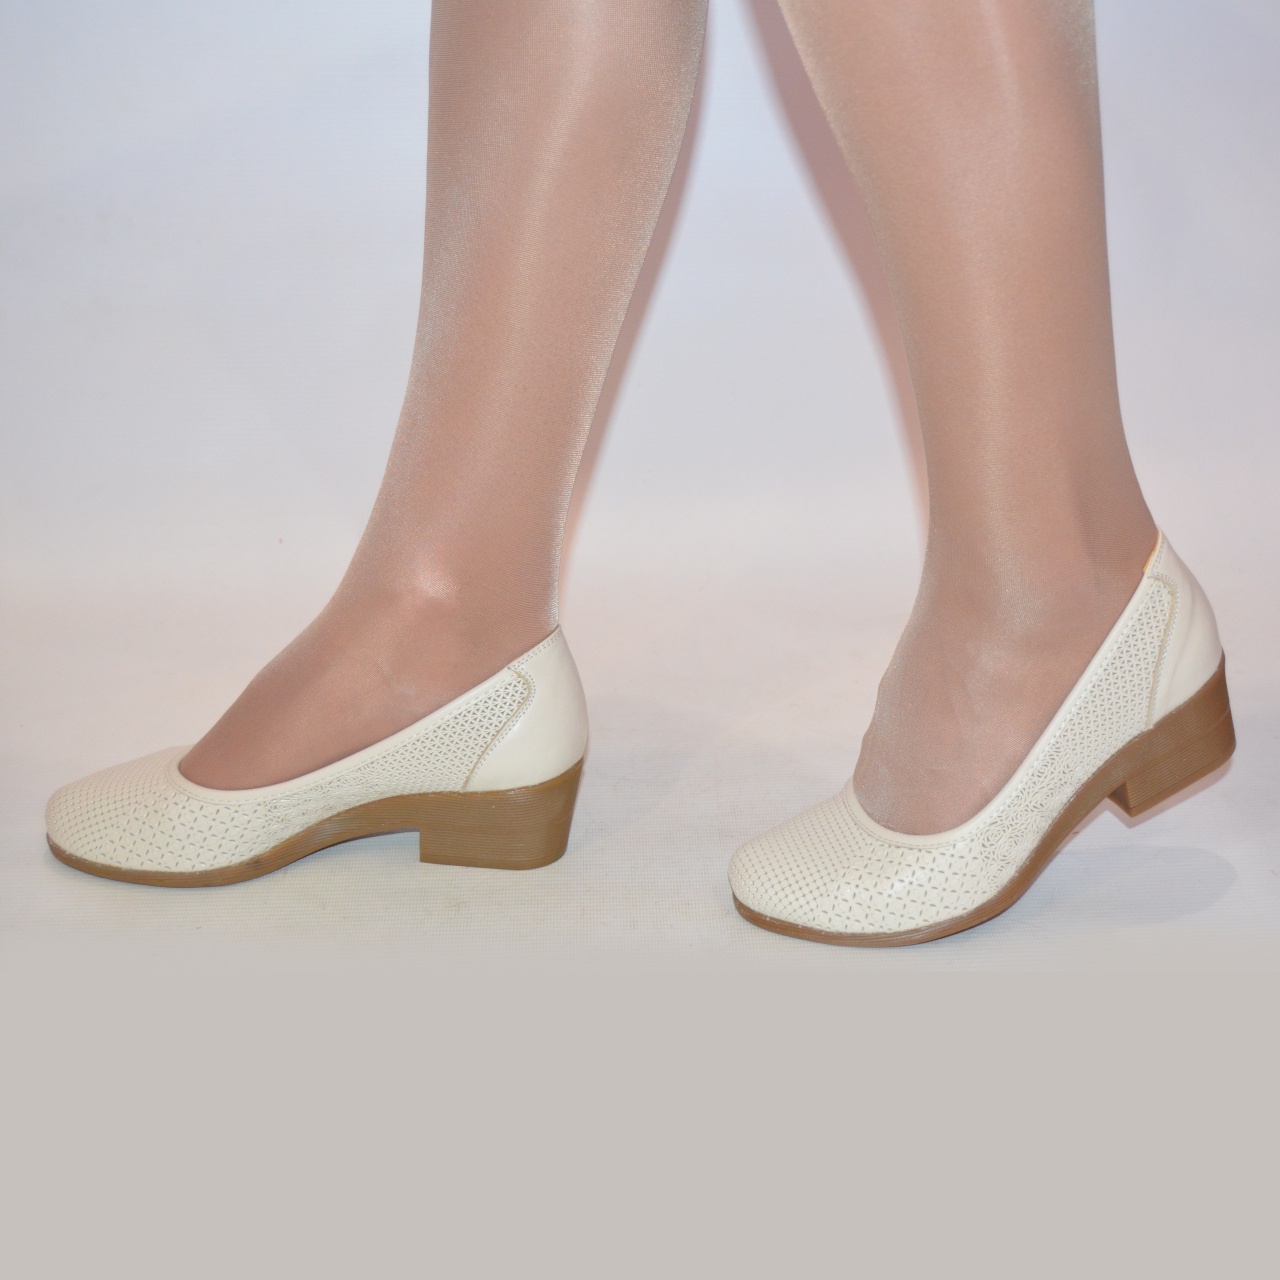 Туфлі жіночі La Pinta 0137-218-71 бежеві шкіра каблук розміри 36,37